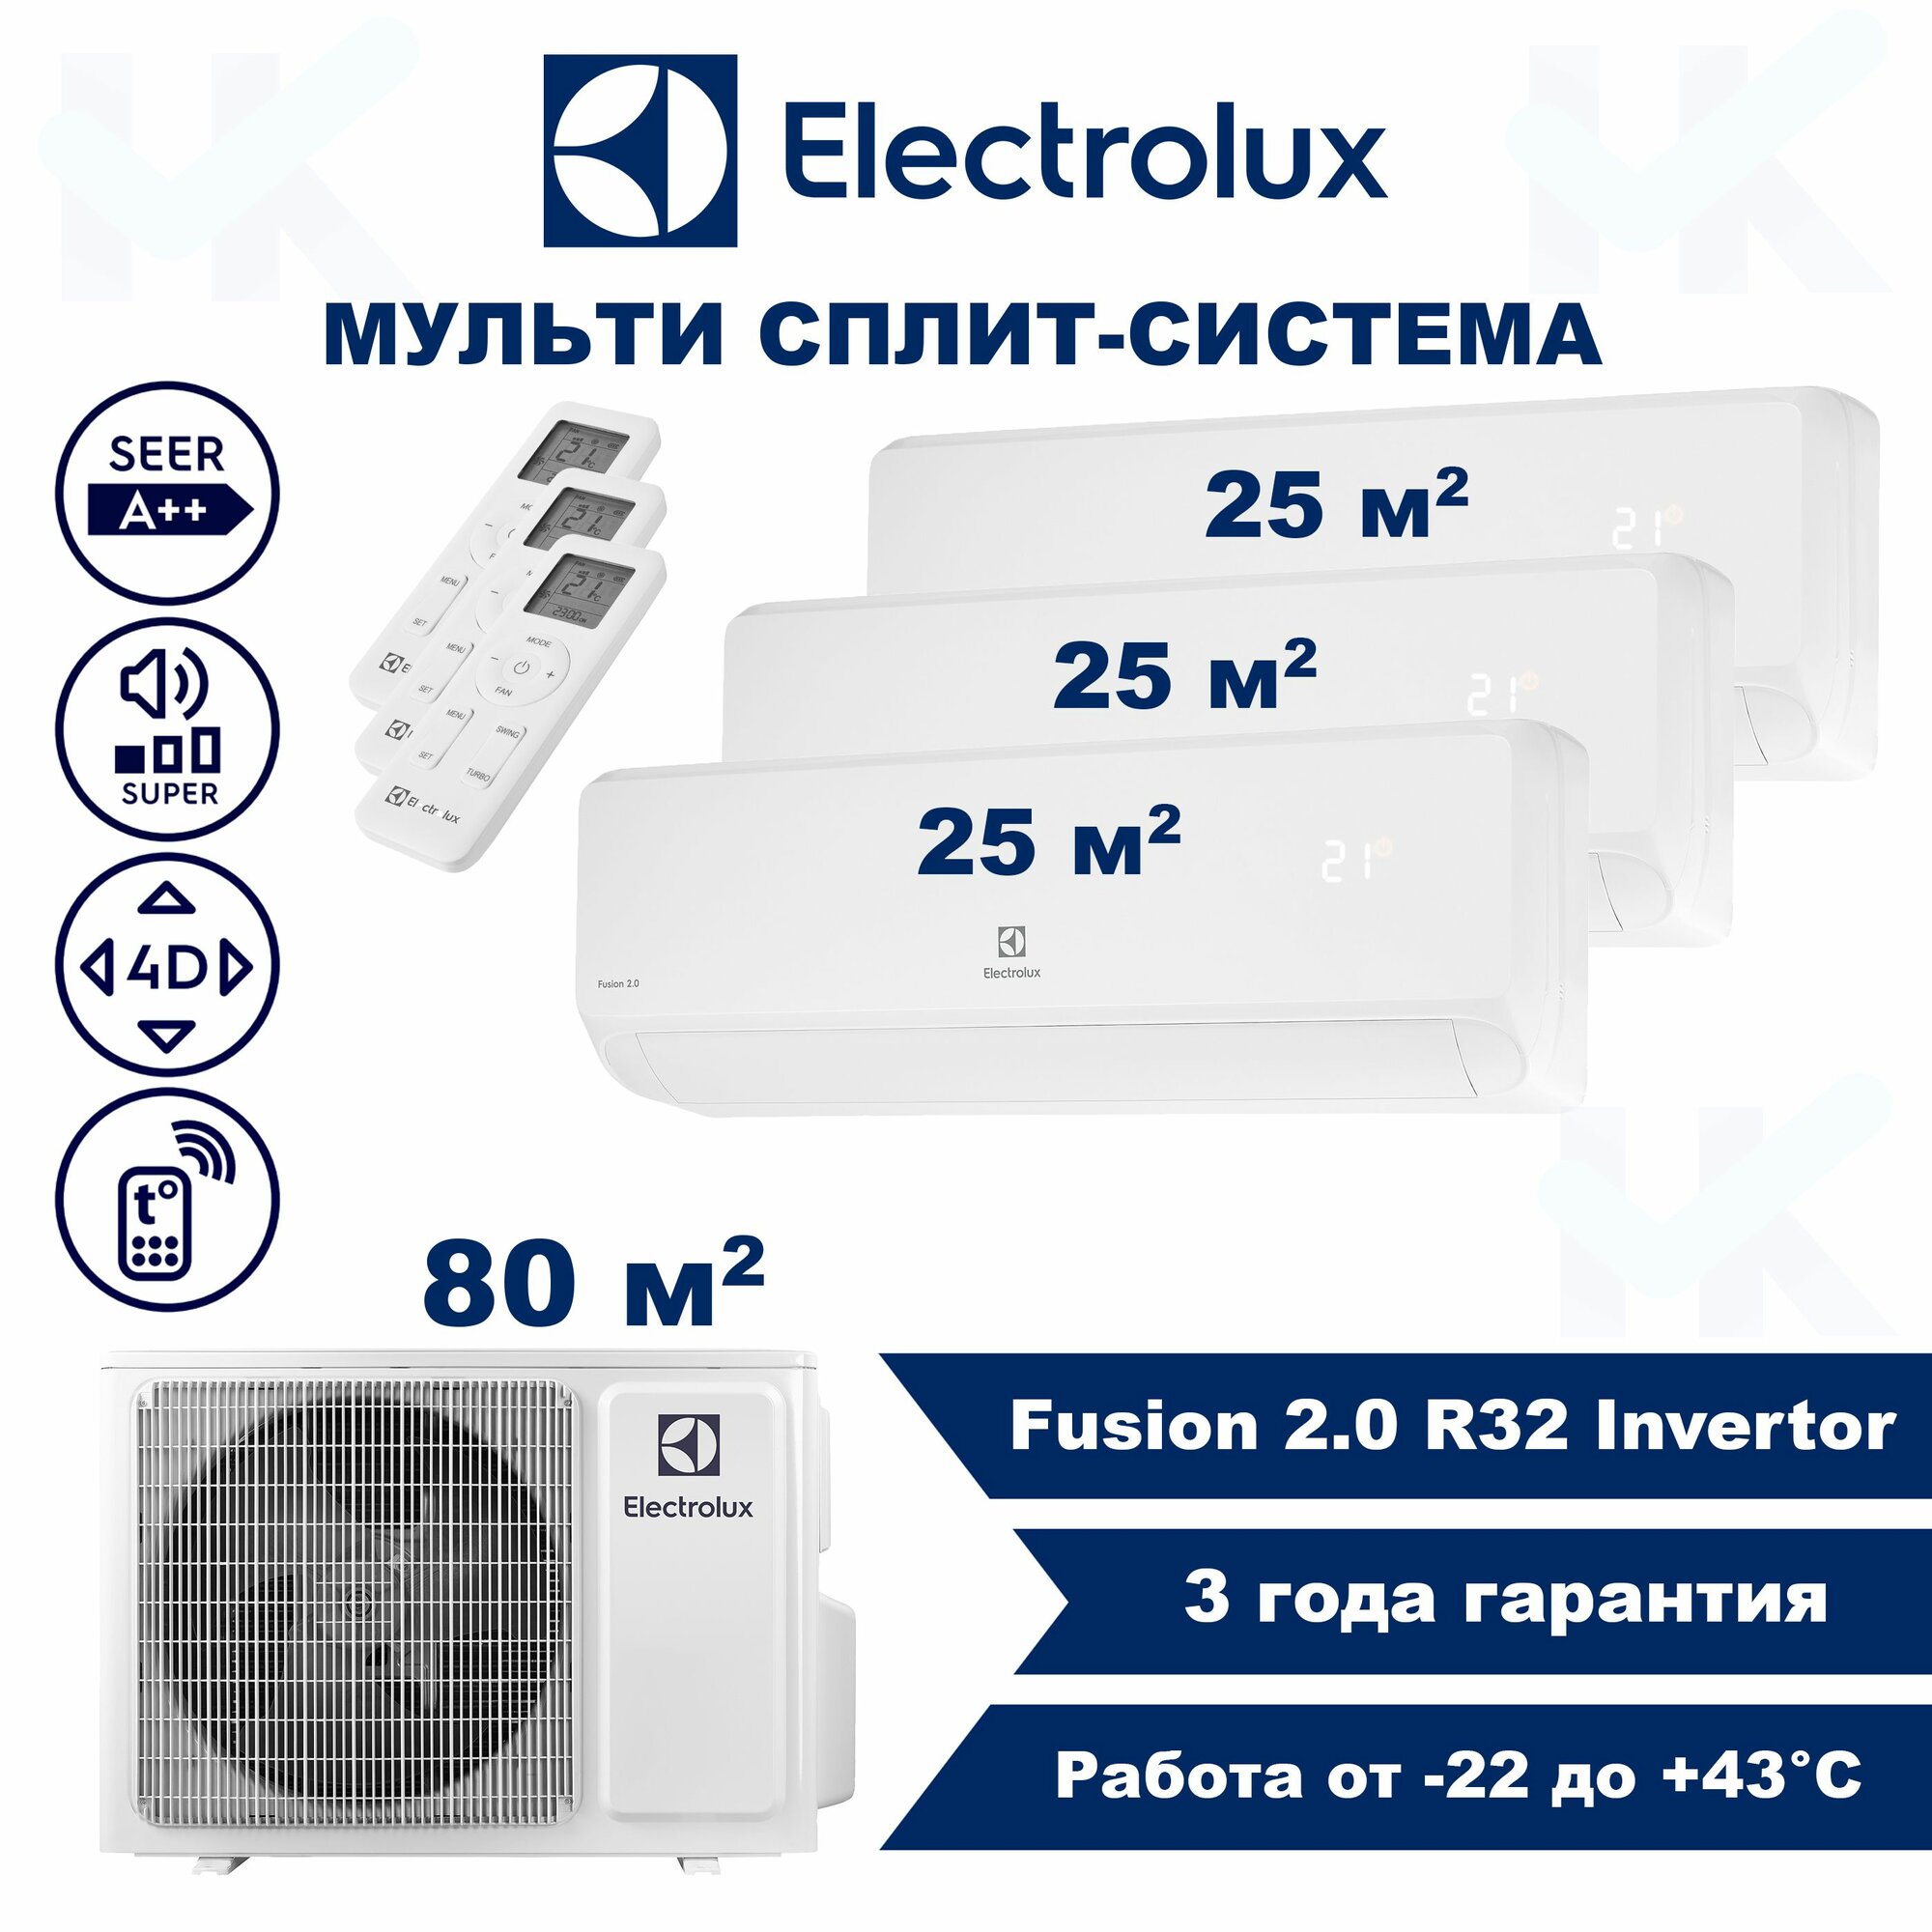 Инверторная мульти сплит-система ELECTROLUX серии Fusion 2.0 на 3 комнаты (25 м2 + 25 м2 + 25 м2) с наружным блоком 80 м2, Постоянная работа